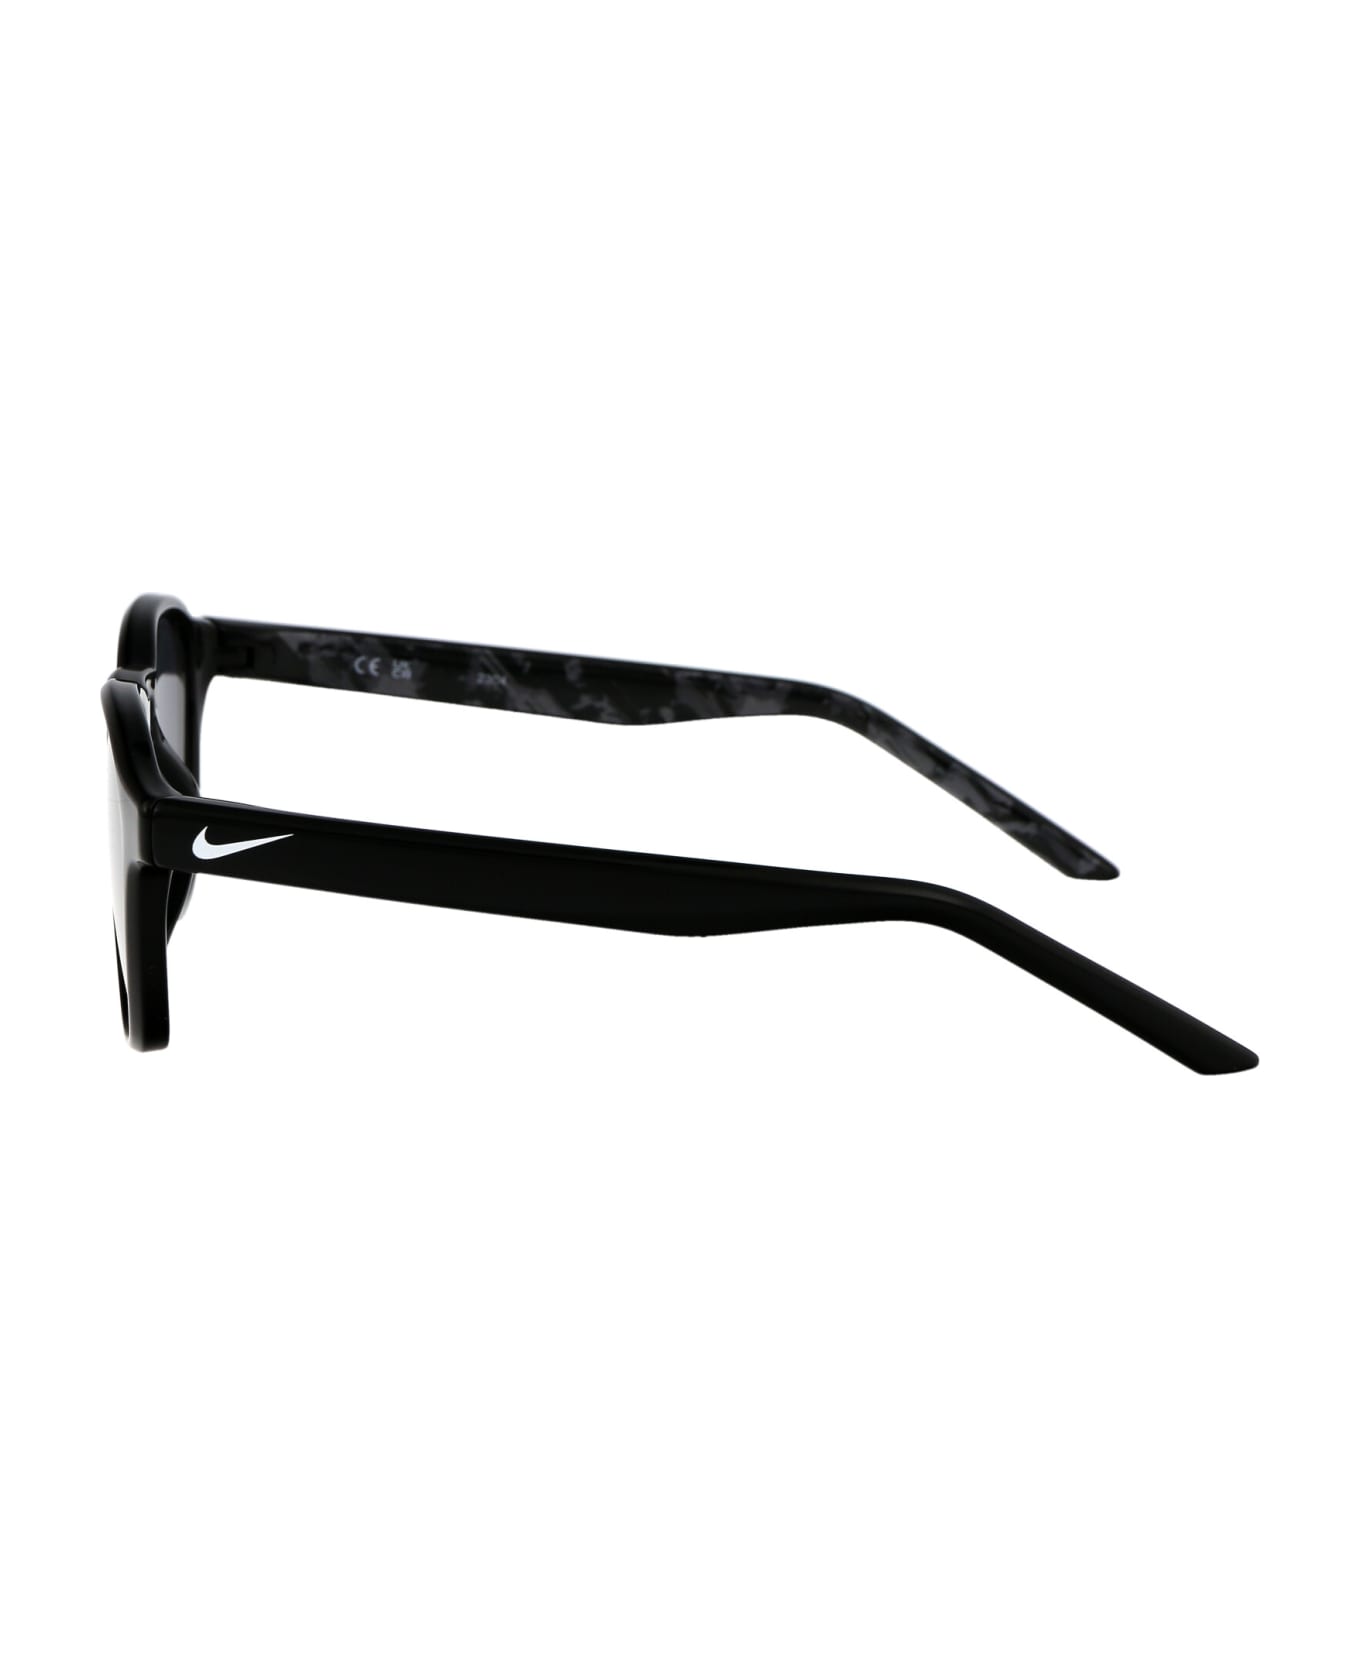 Nike Smash Sunglasses - 010 BLACK NOIR 